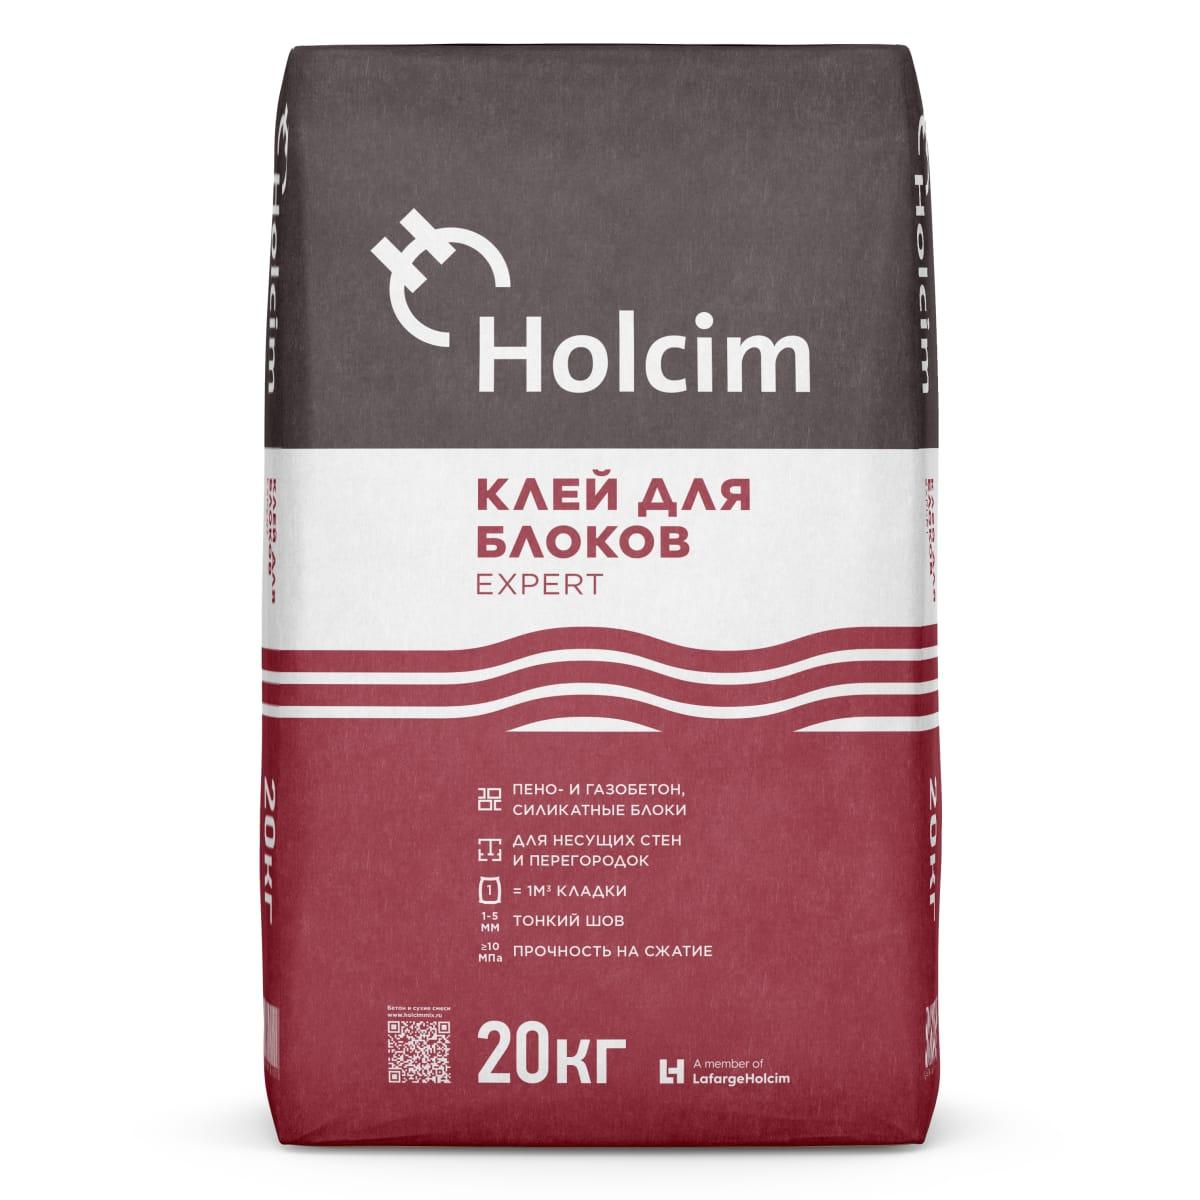 Купить клей для газосиликатных. Клей для блоков Expert 20 кг Холсим. Клей для блоков Holcim 20 кг. Клей для блоков Holcim Expert (20кг). Holcim клей 25кг.